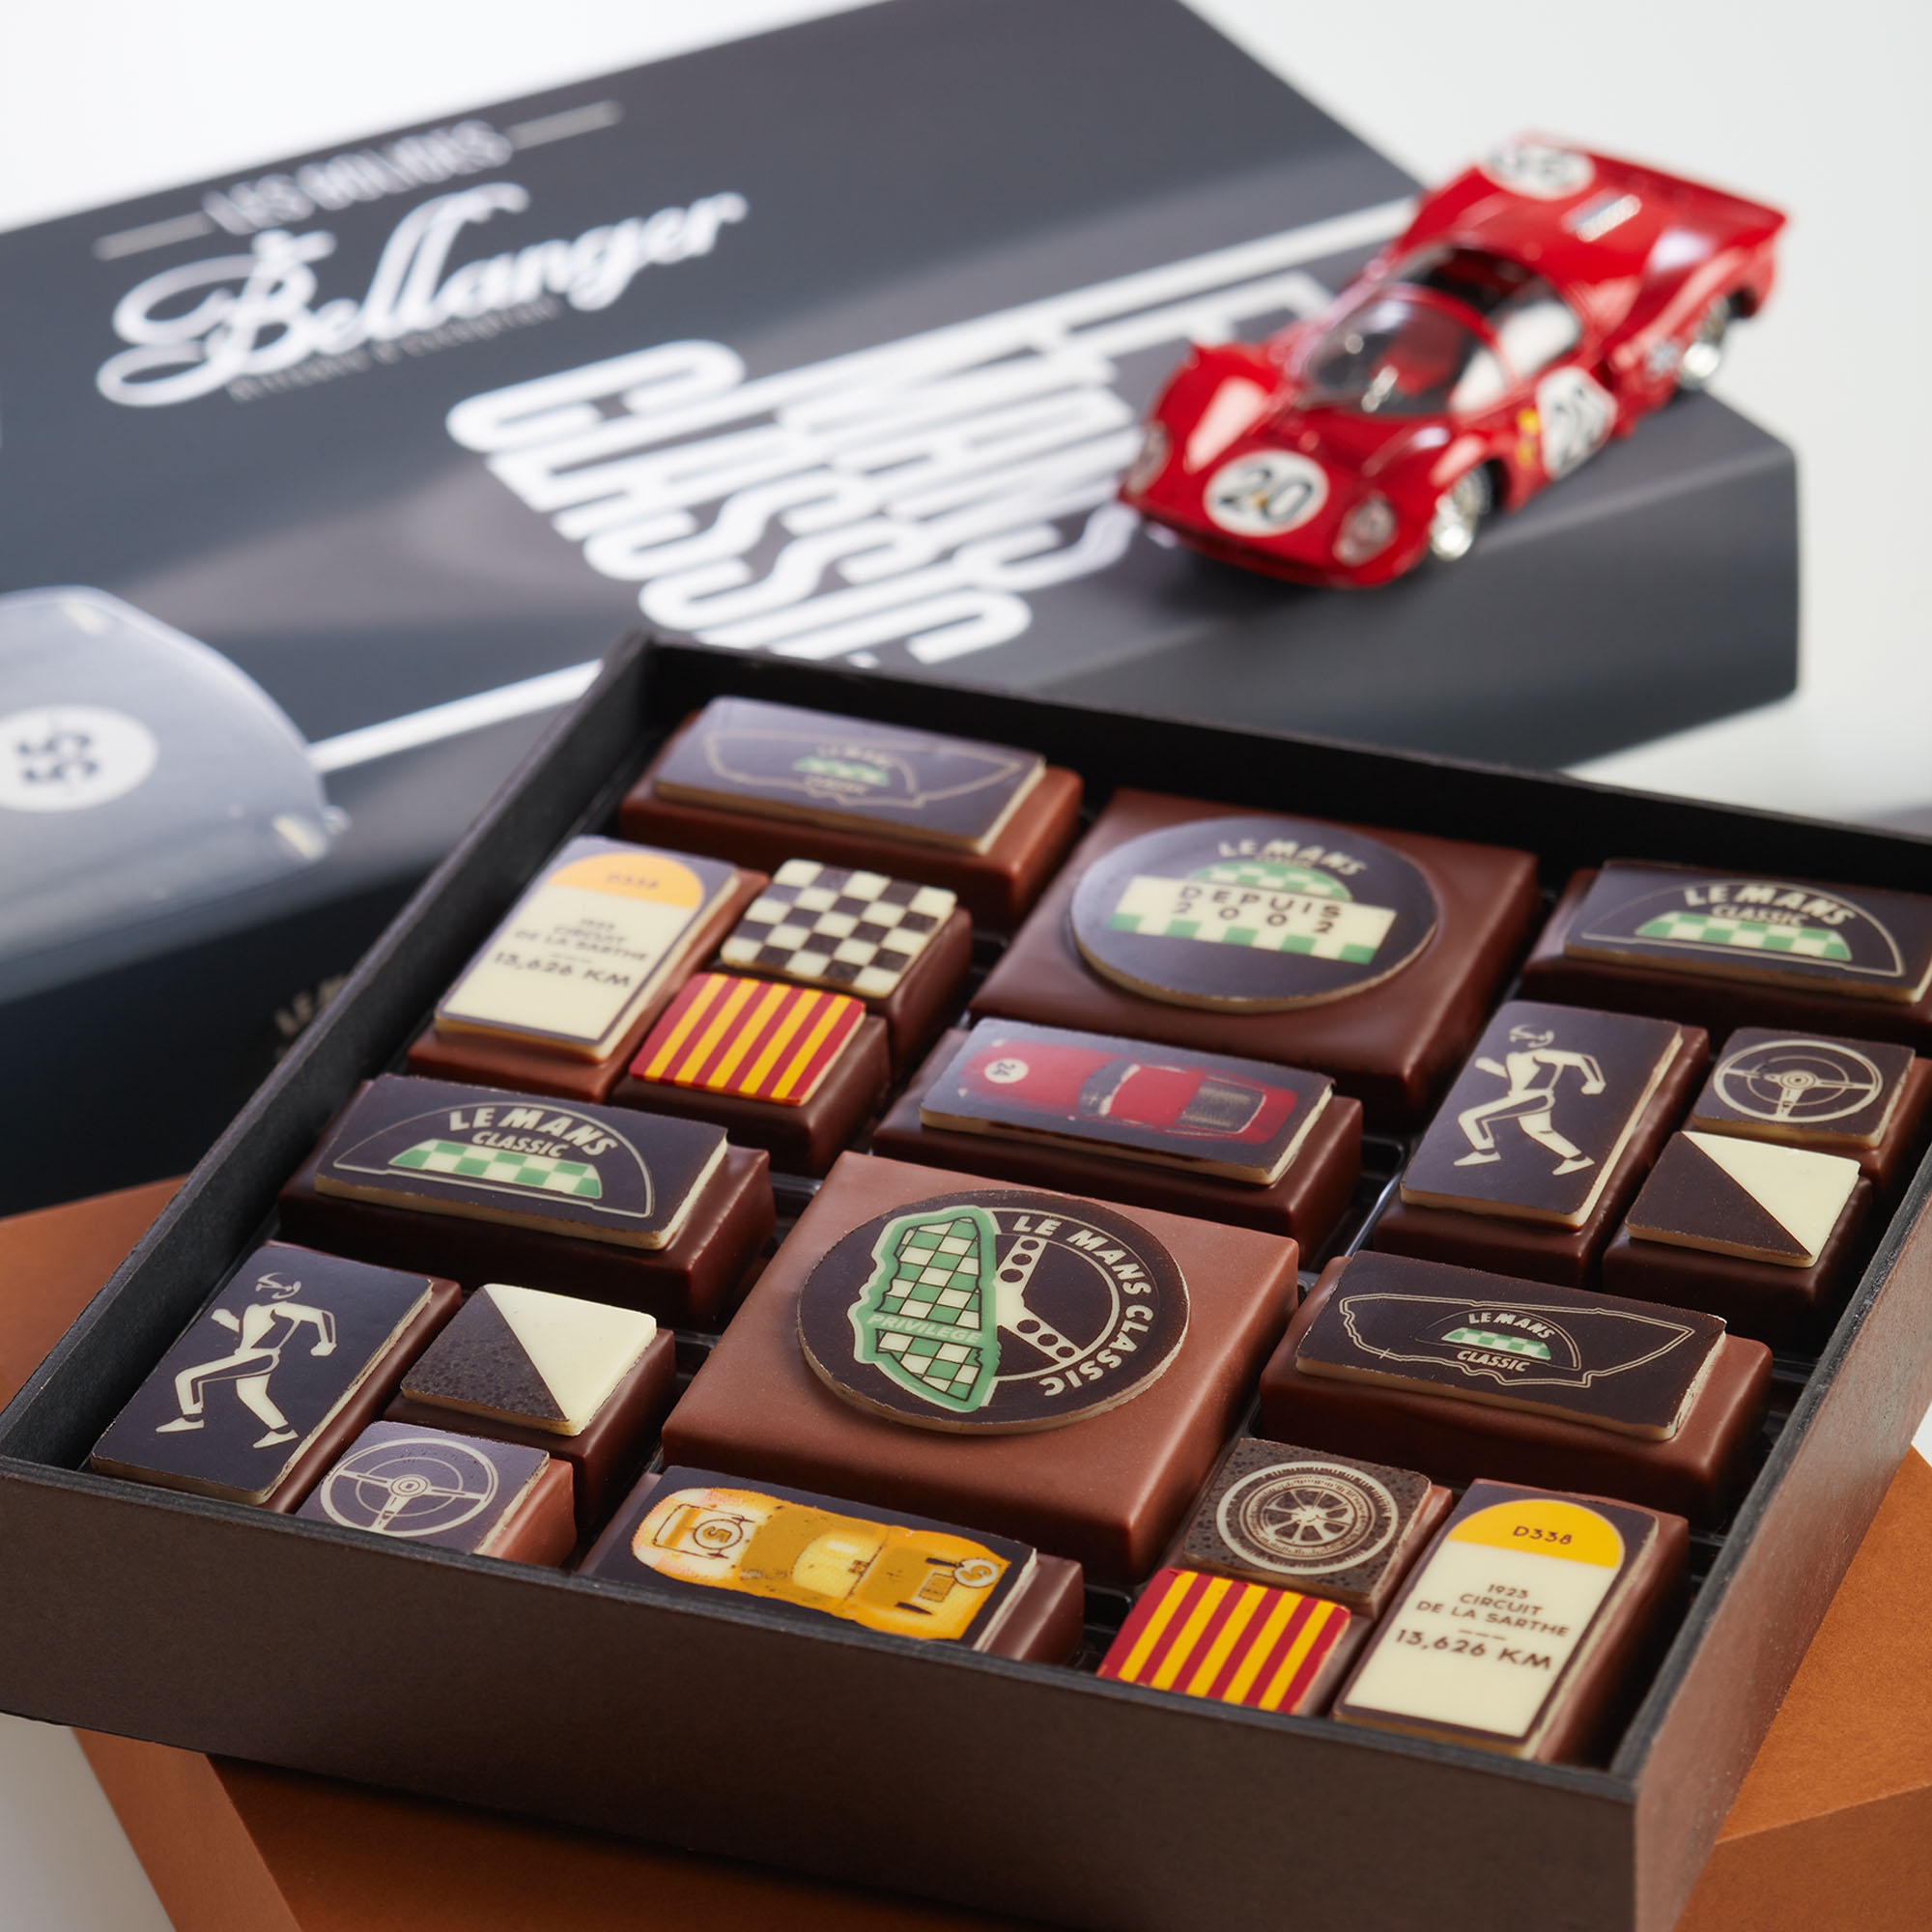 chocolats bellanger le mans classic